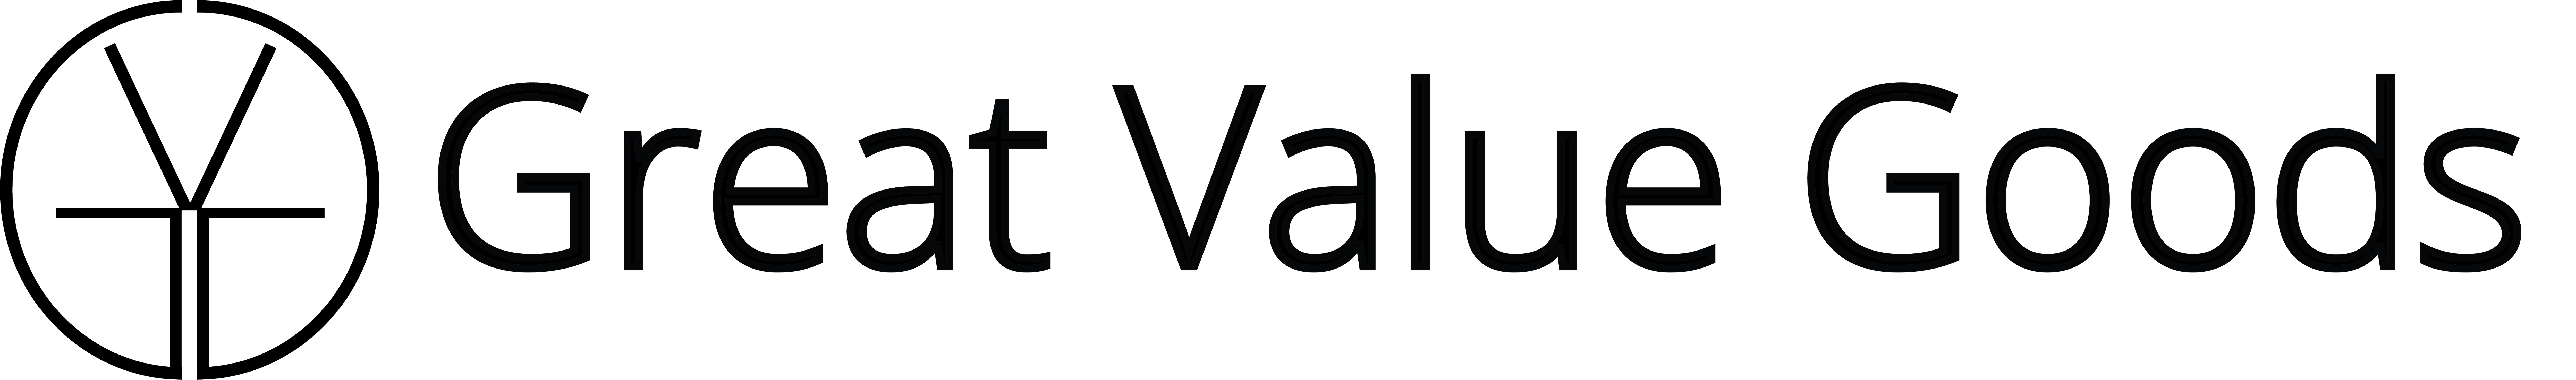 Vector grande valor logotipo PNG imagem de alta qualidade